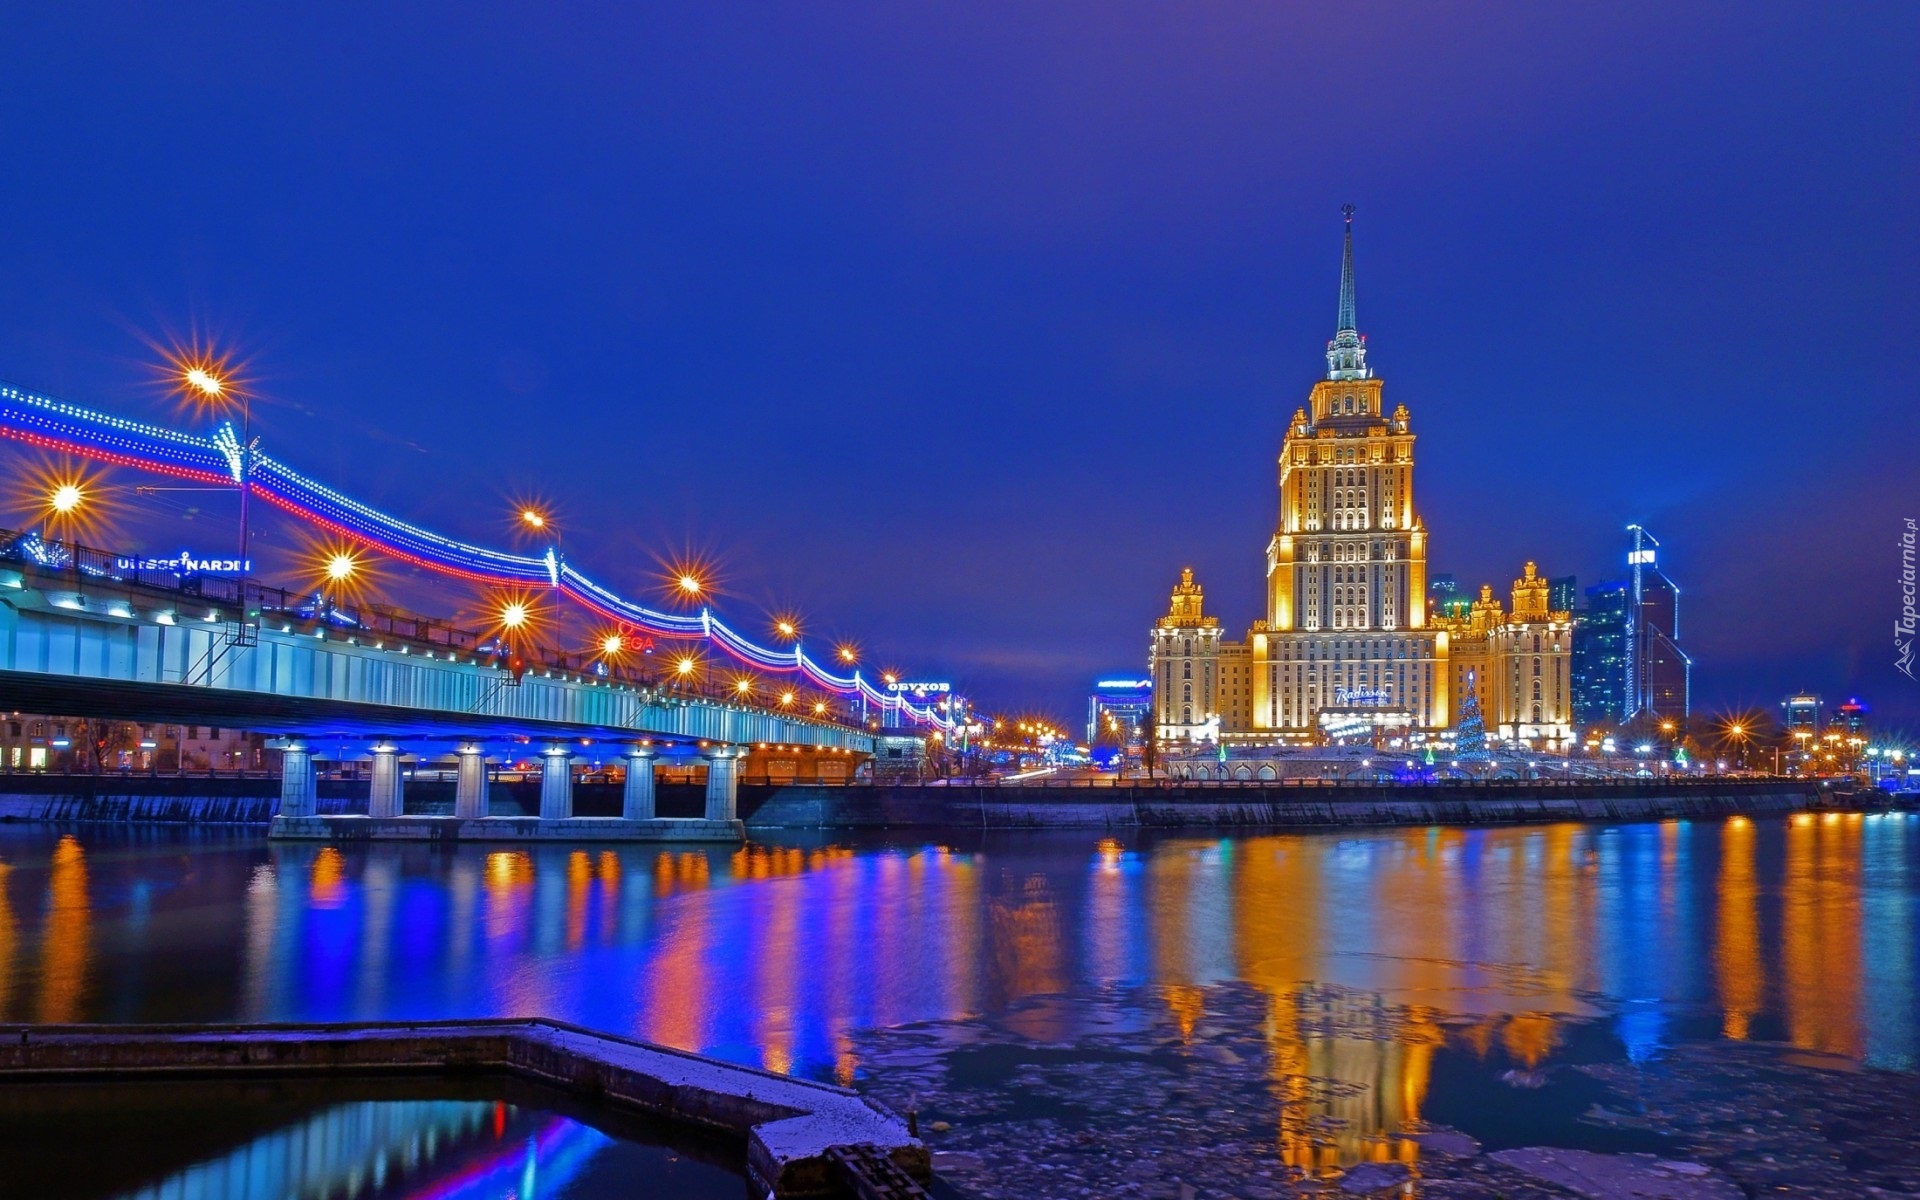 Oświetlony, Most, Rzeka, Budowla, Moskwa, Rosja